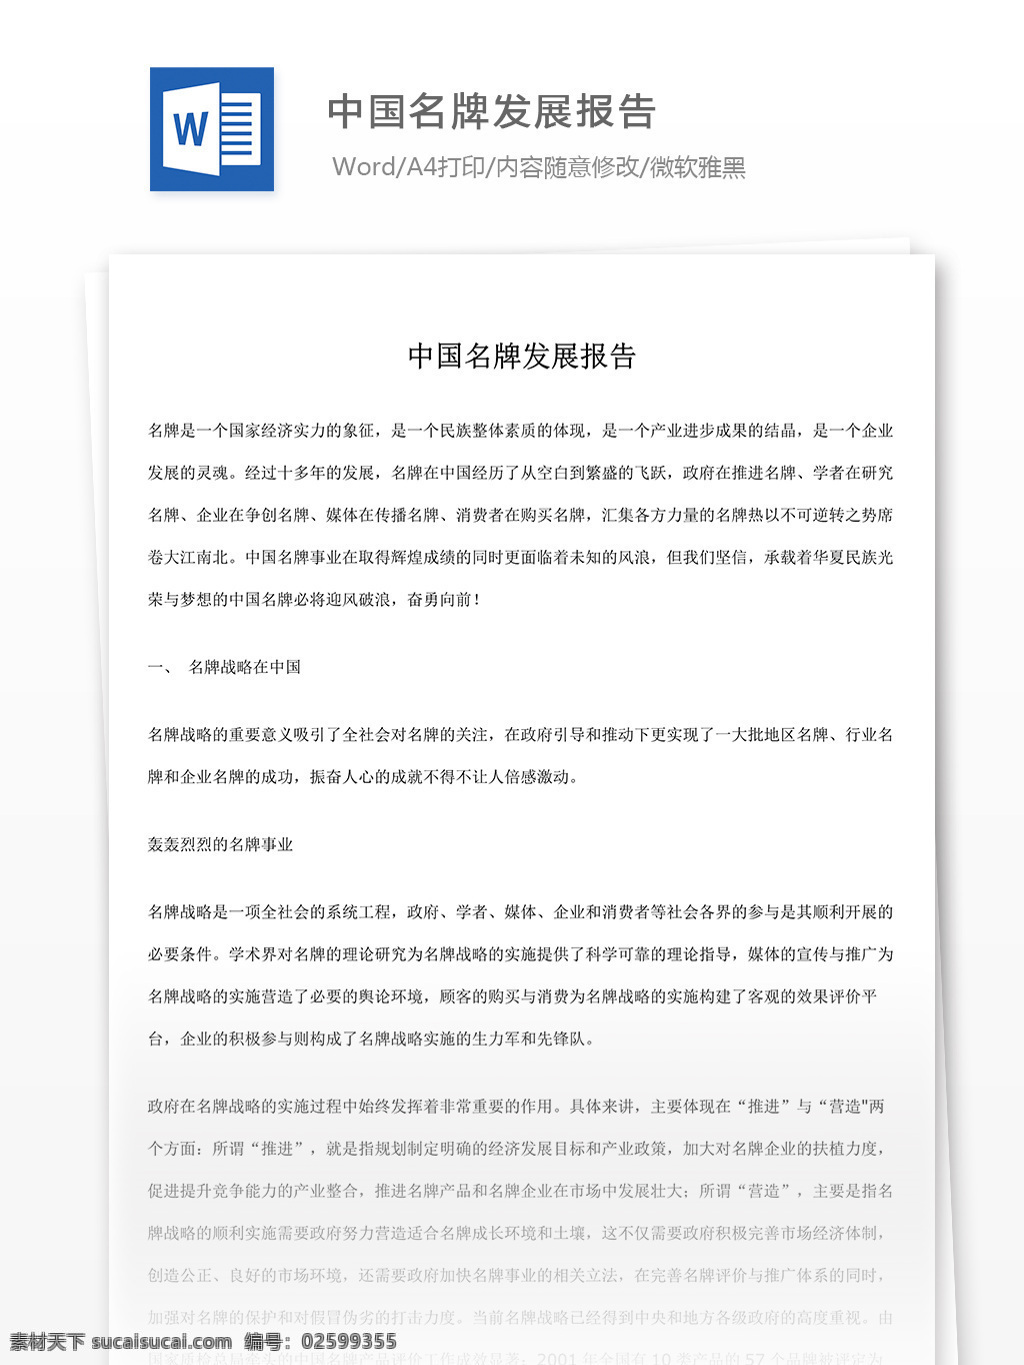 中国 名牌 发展报告 文档 world 文档模板 广告 文案 策划 广告策划 报告 中国名牌 名牌报告